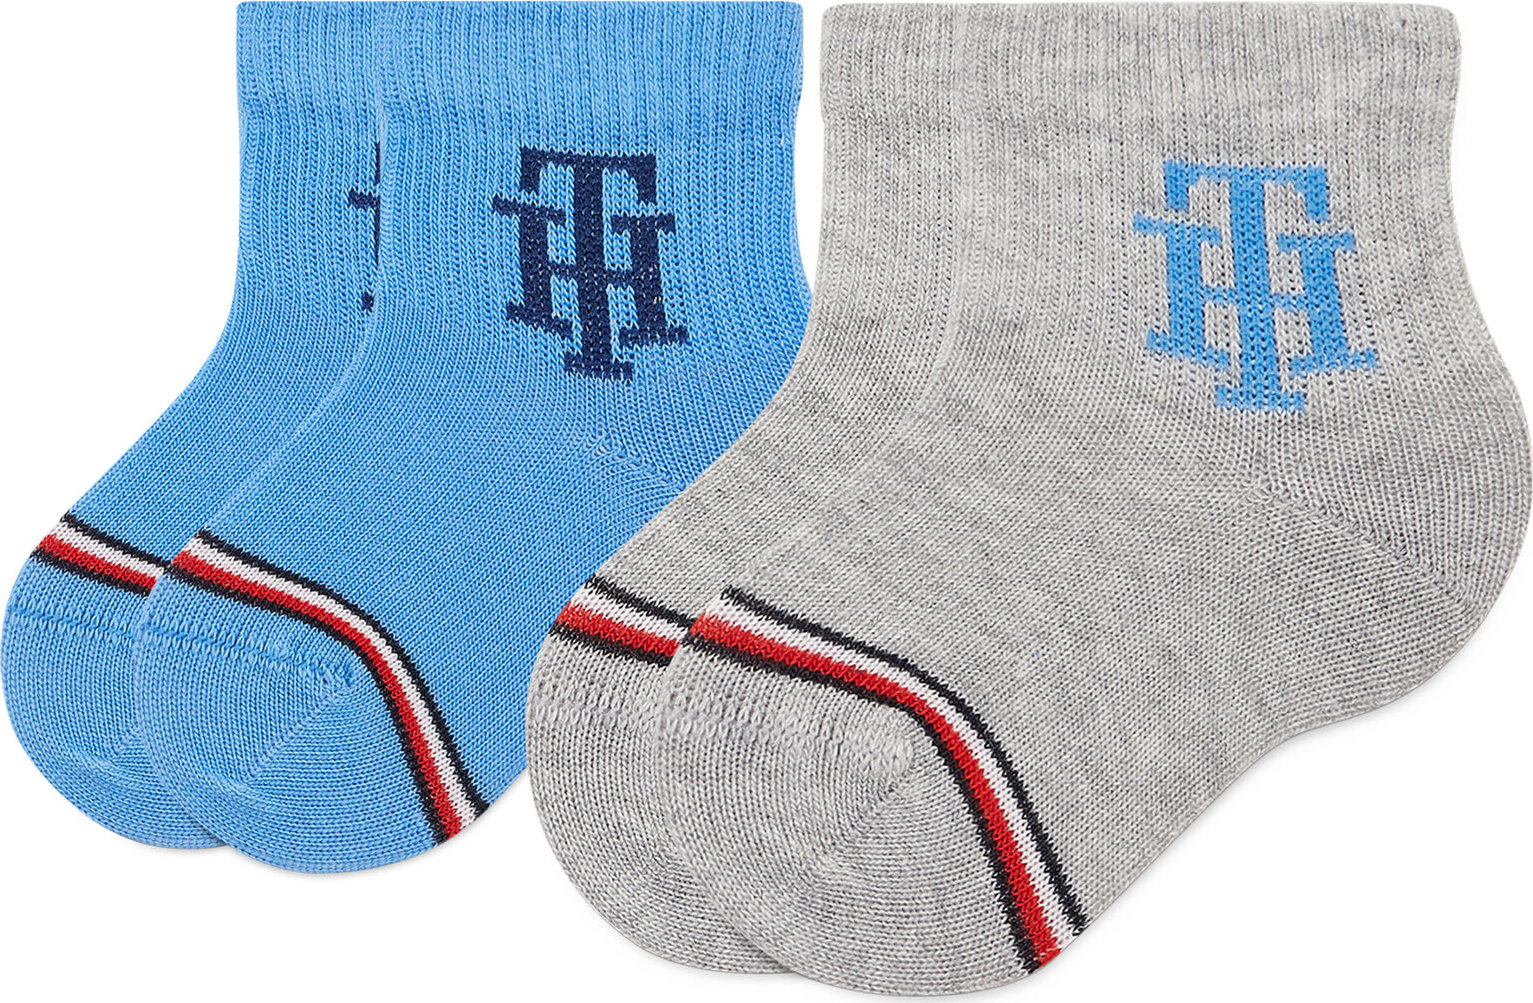 Sada 2 párů dětských vysokých ponožek Tommy Hilfiger 701220276 Blue Combo 003